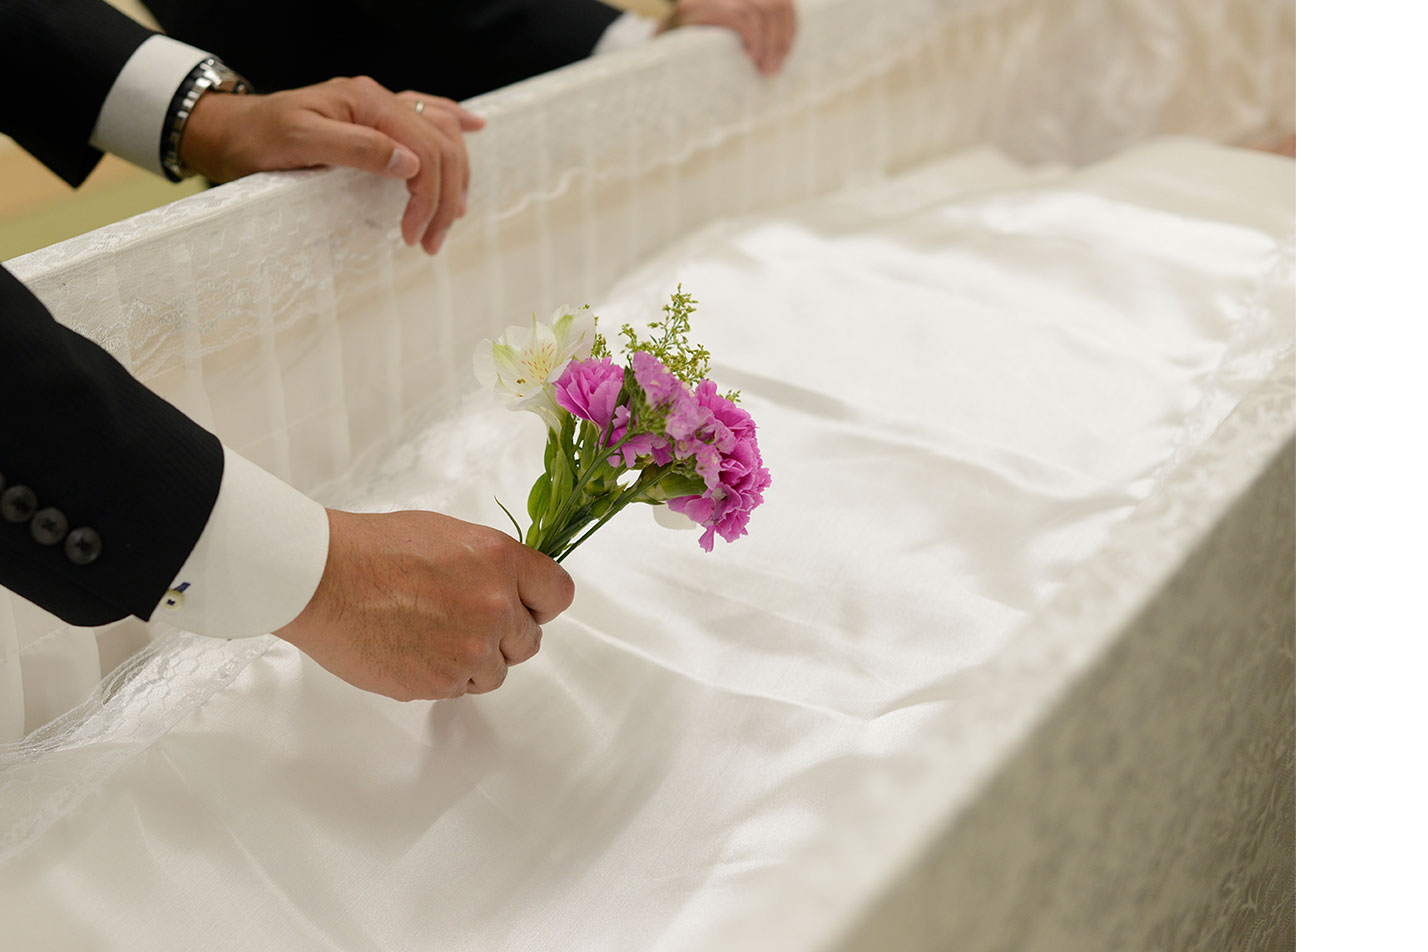  高松市ではじめての葬儀を行う喪主様へのイメージ画像